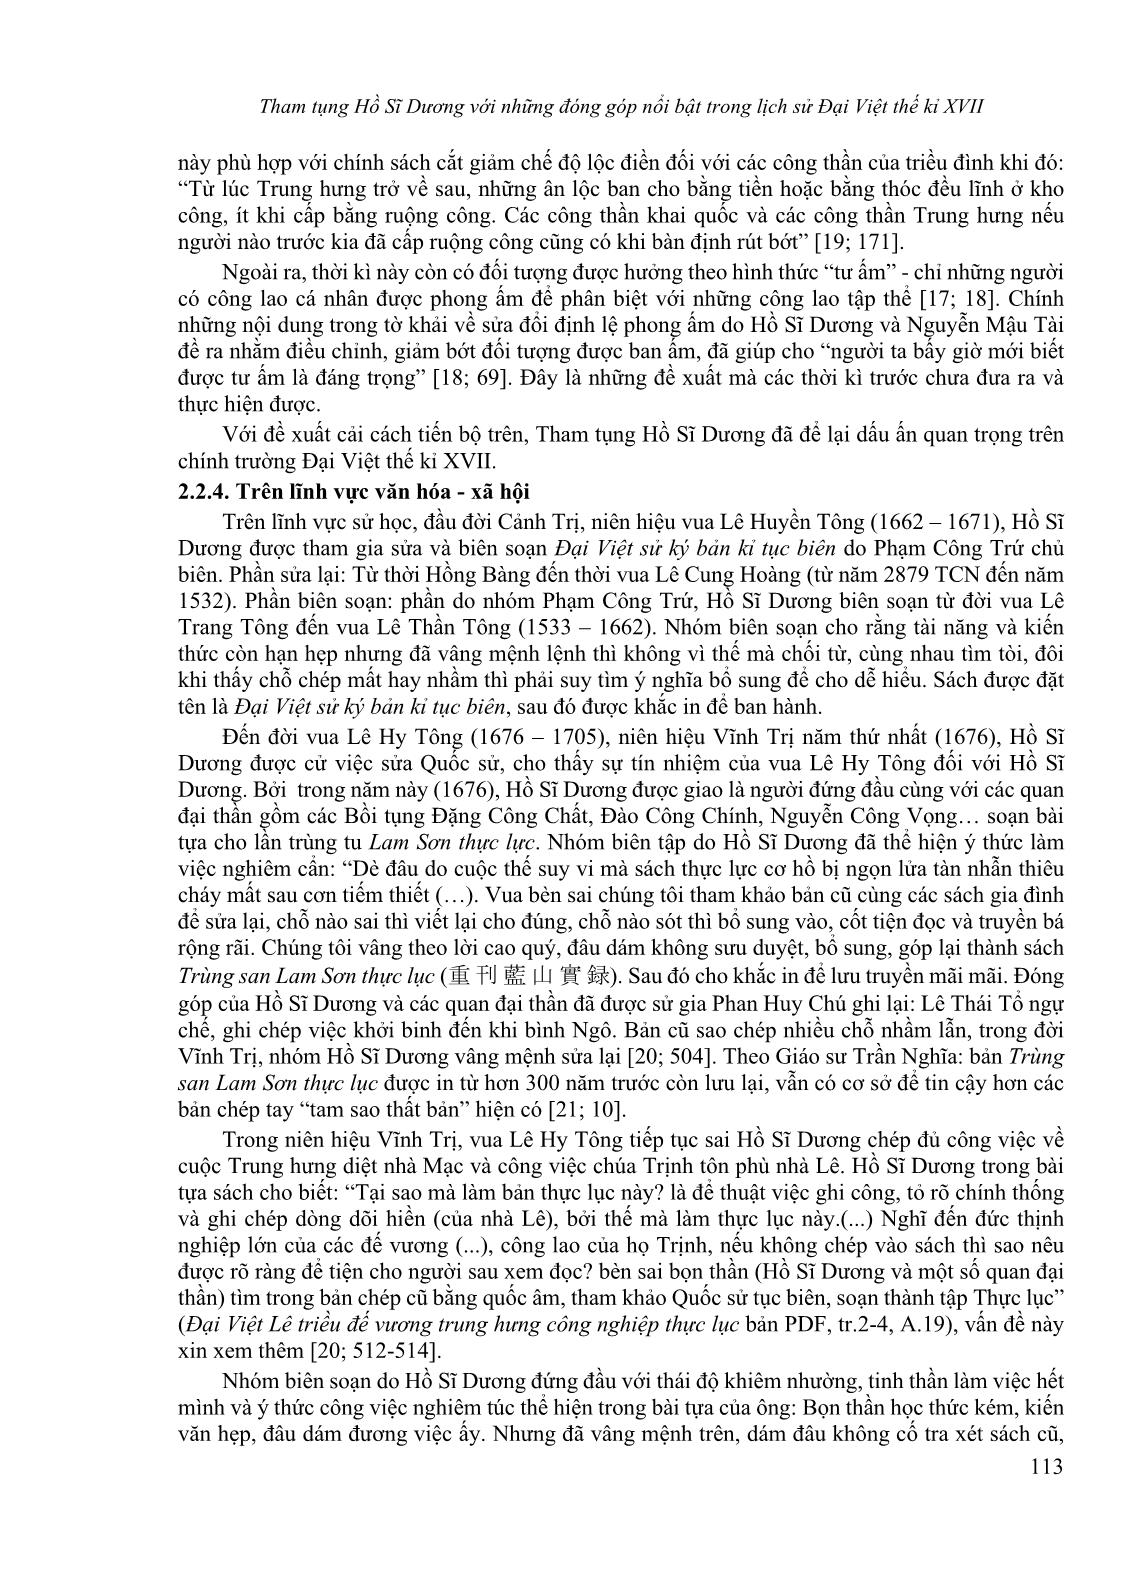 Tham tụng Hồ Sĩ Dương với những đóng góp nổi bật trong lịch sử Đại Việt thế kỉ XVII trang 7